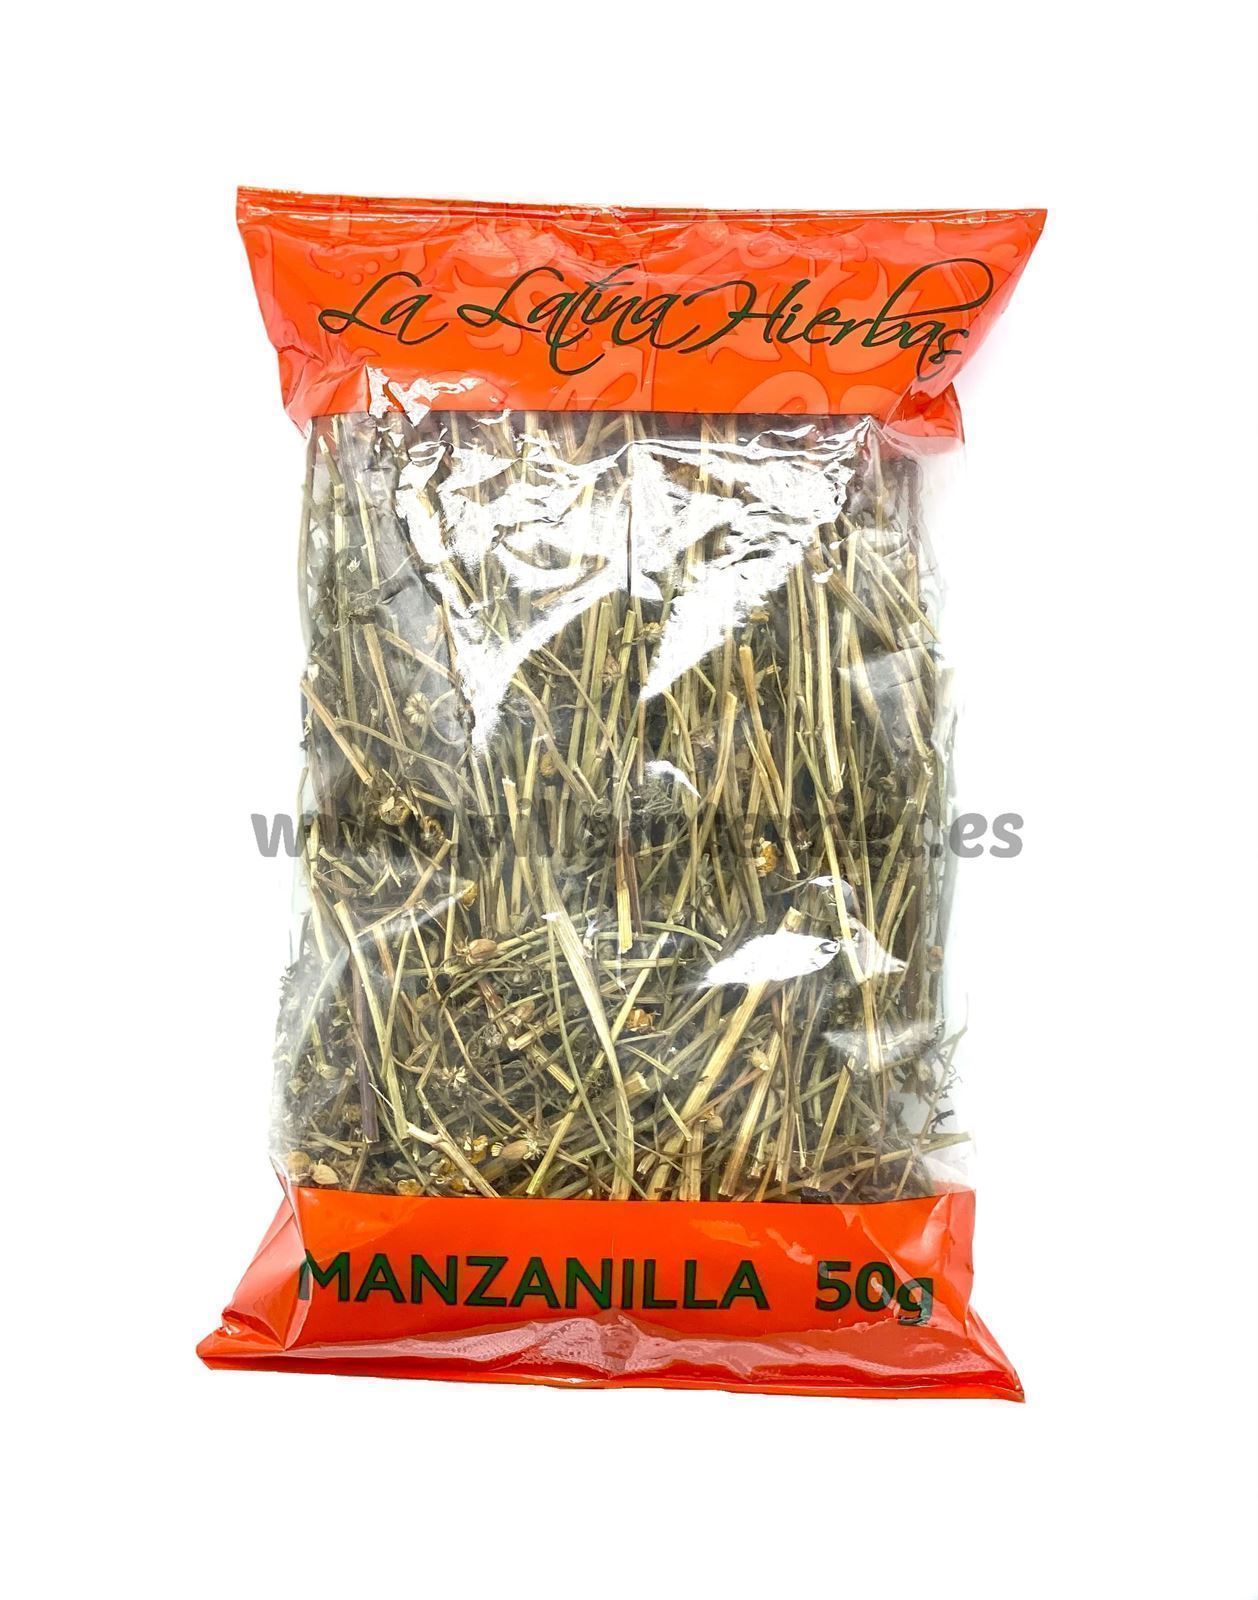 Manzanilla en hierba 50g - Imagen 1